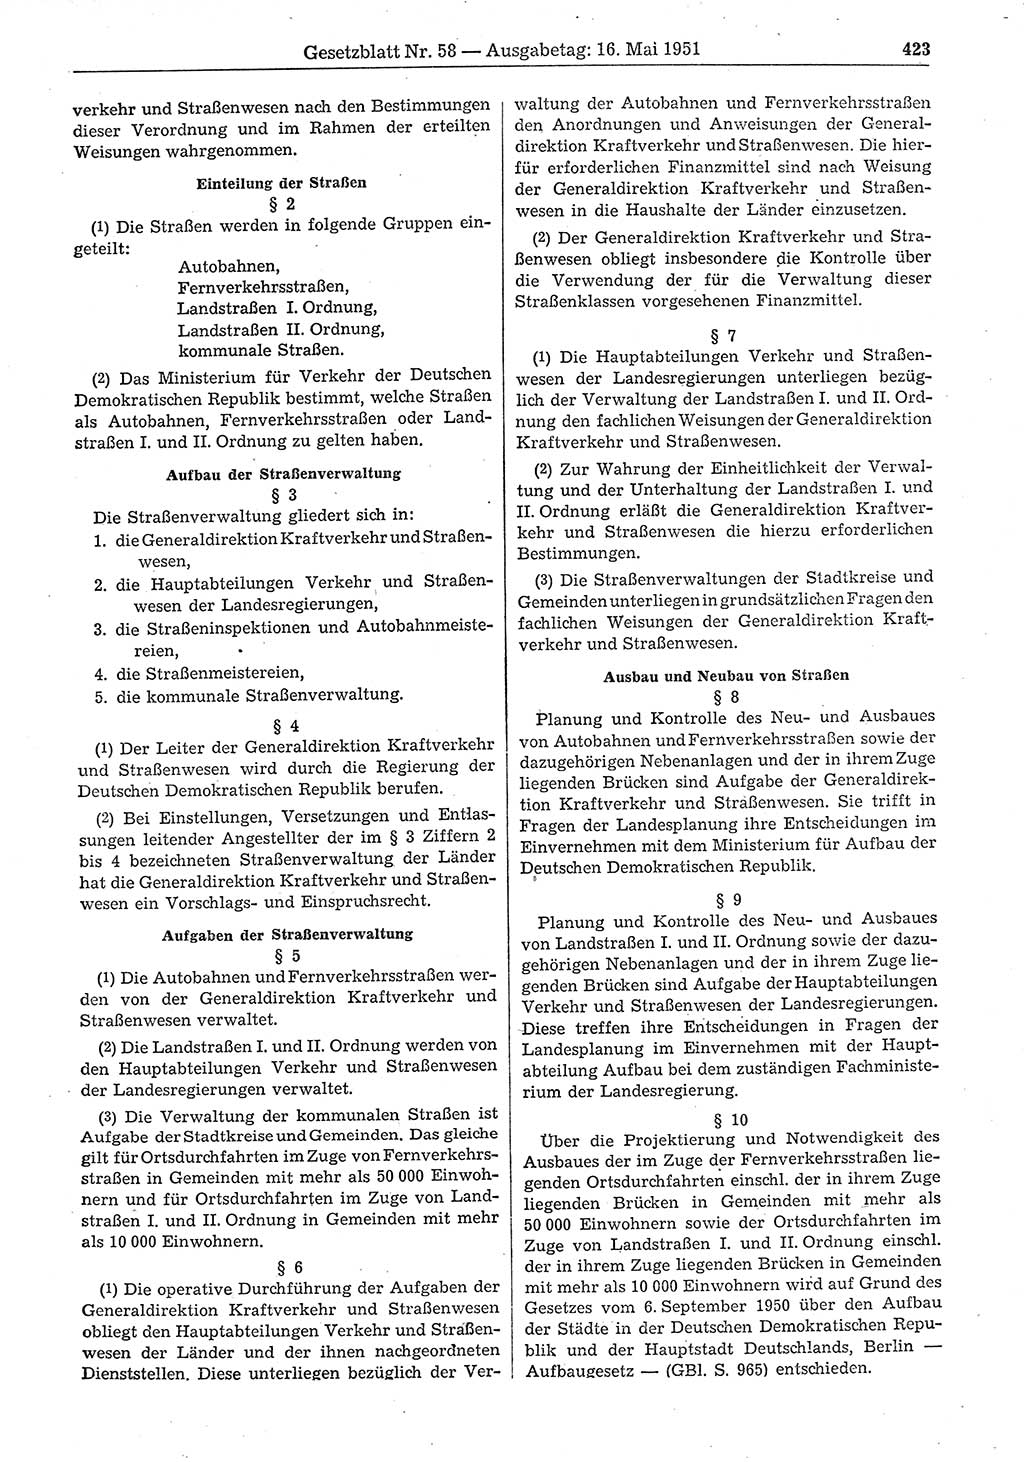 Gesetzblatt (GBl.) der Deutschen Demokratischen Republik (DDR) 1951, Seite 423 (GBl. DDR 1951, S. 423)